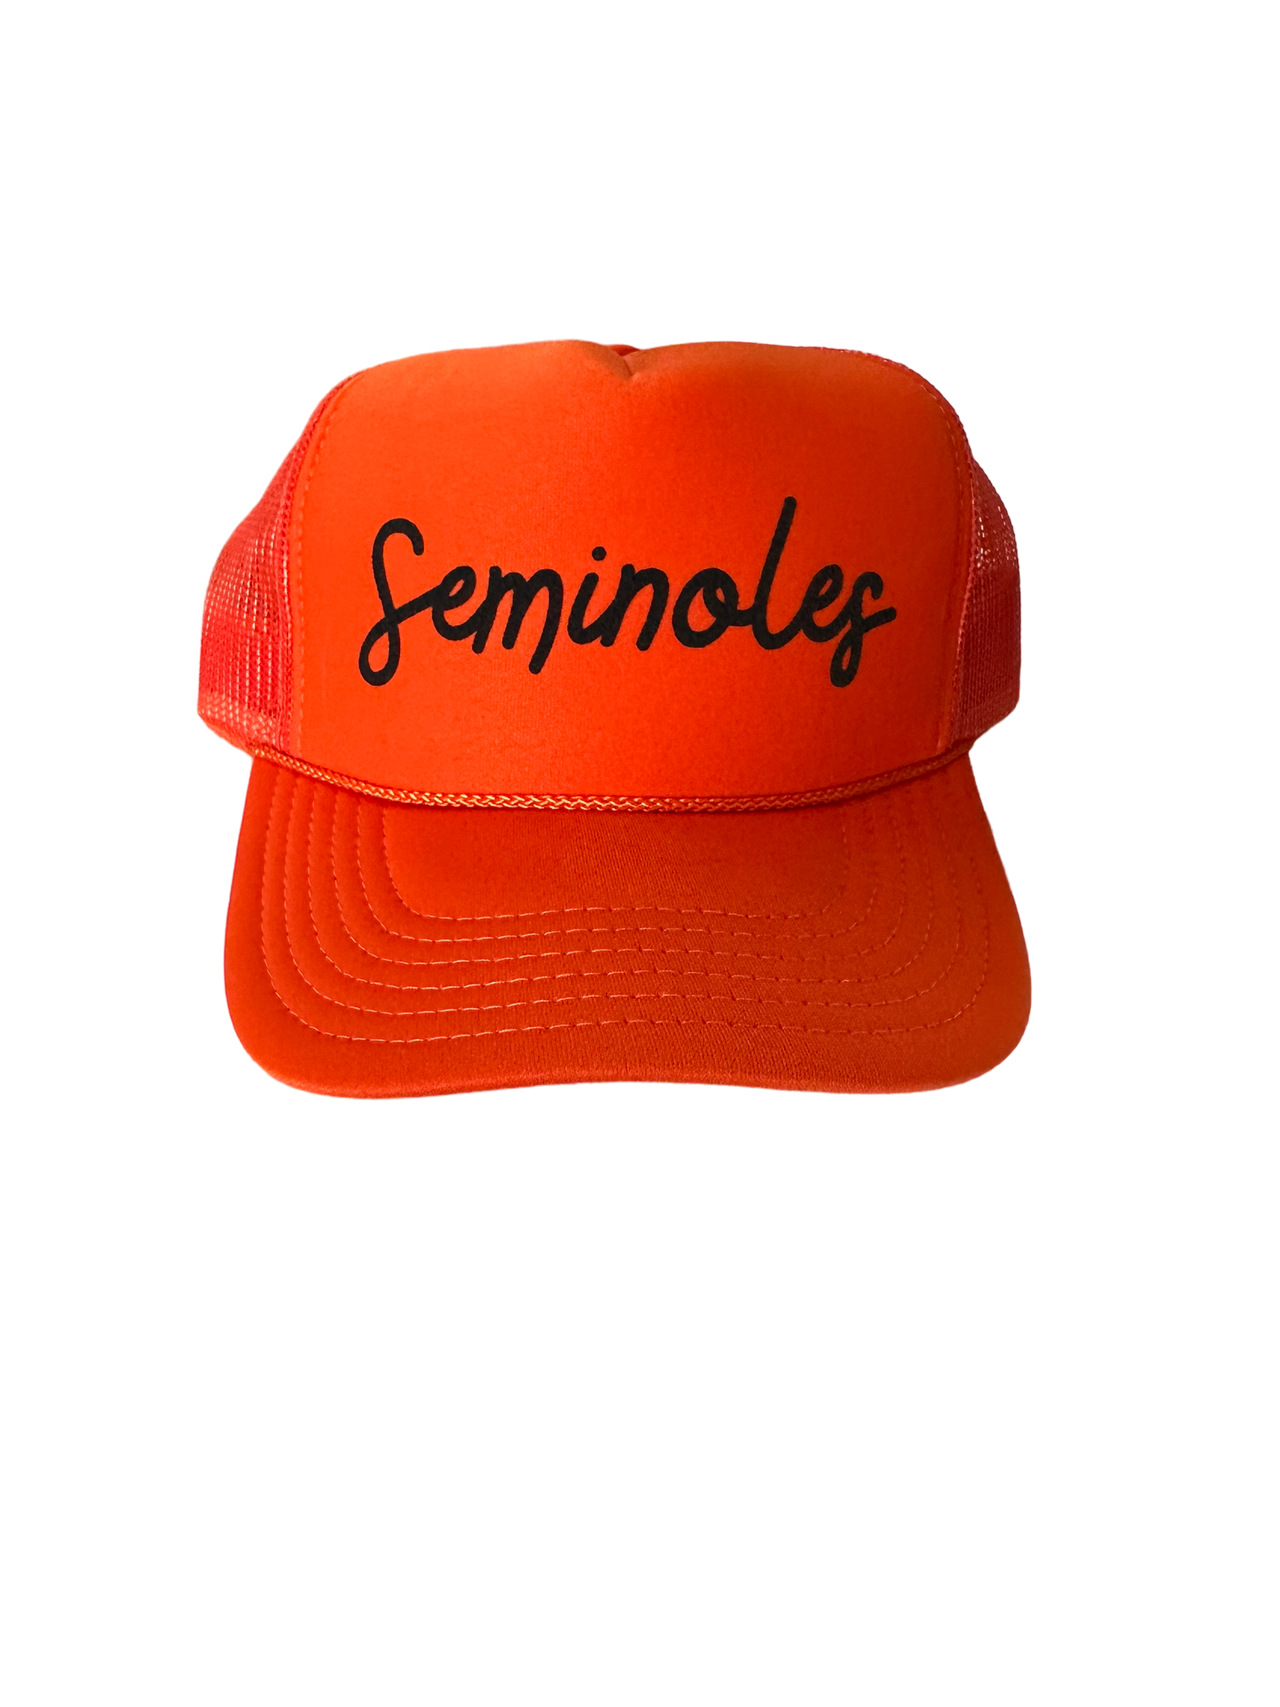 Seminoles Orange Trucker